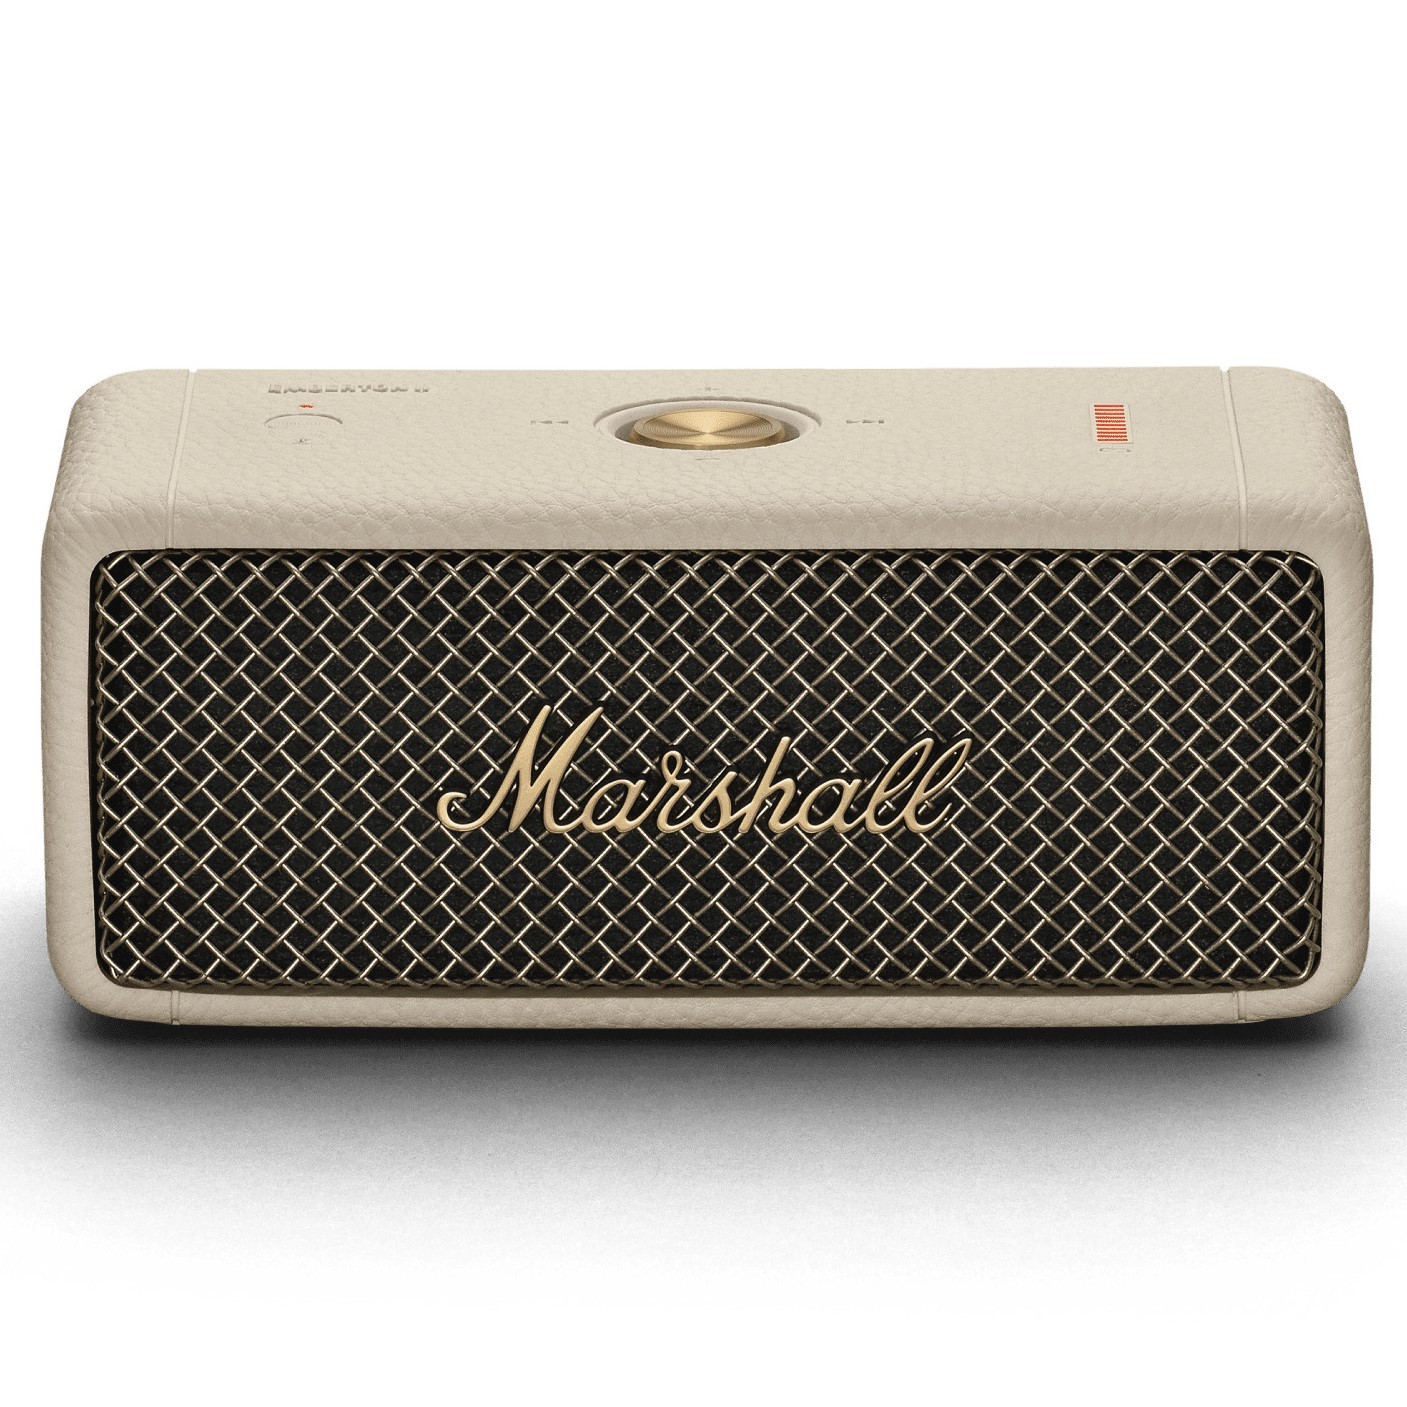 Marshall EMBERTON II Portable Bluetooth Speaker - Cream